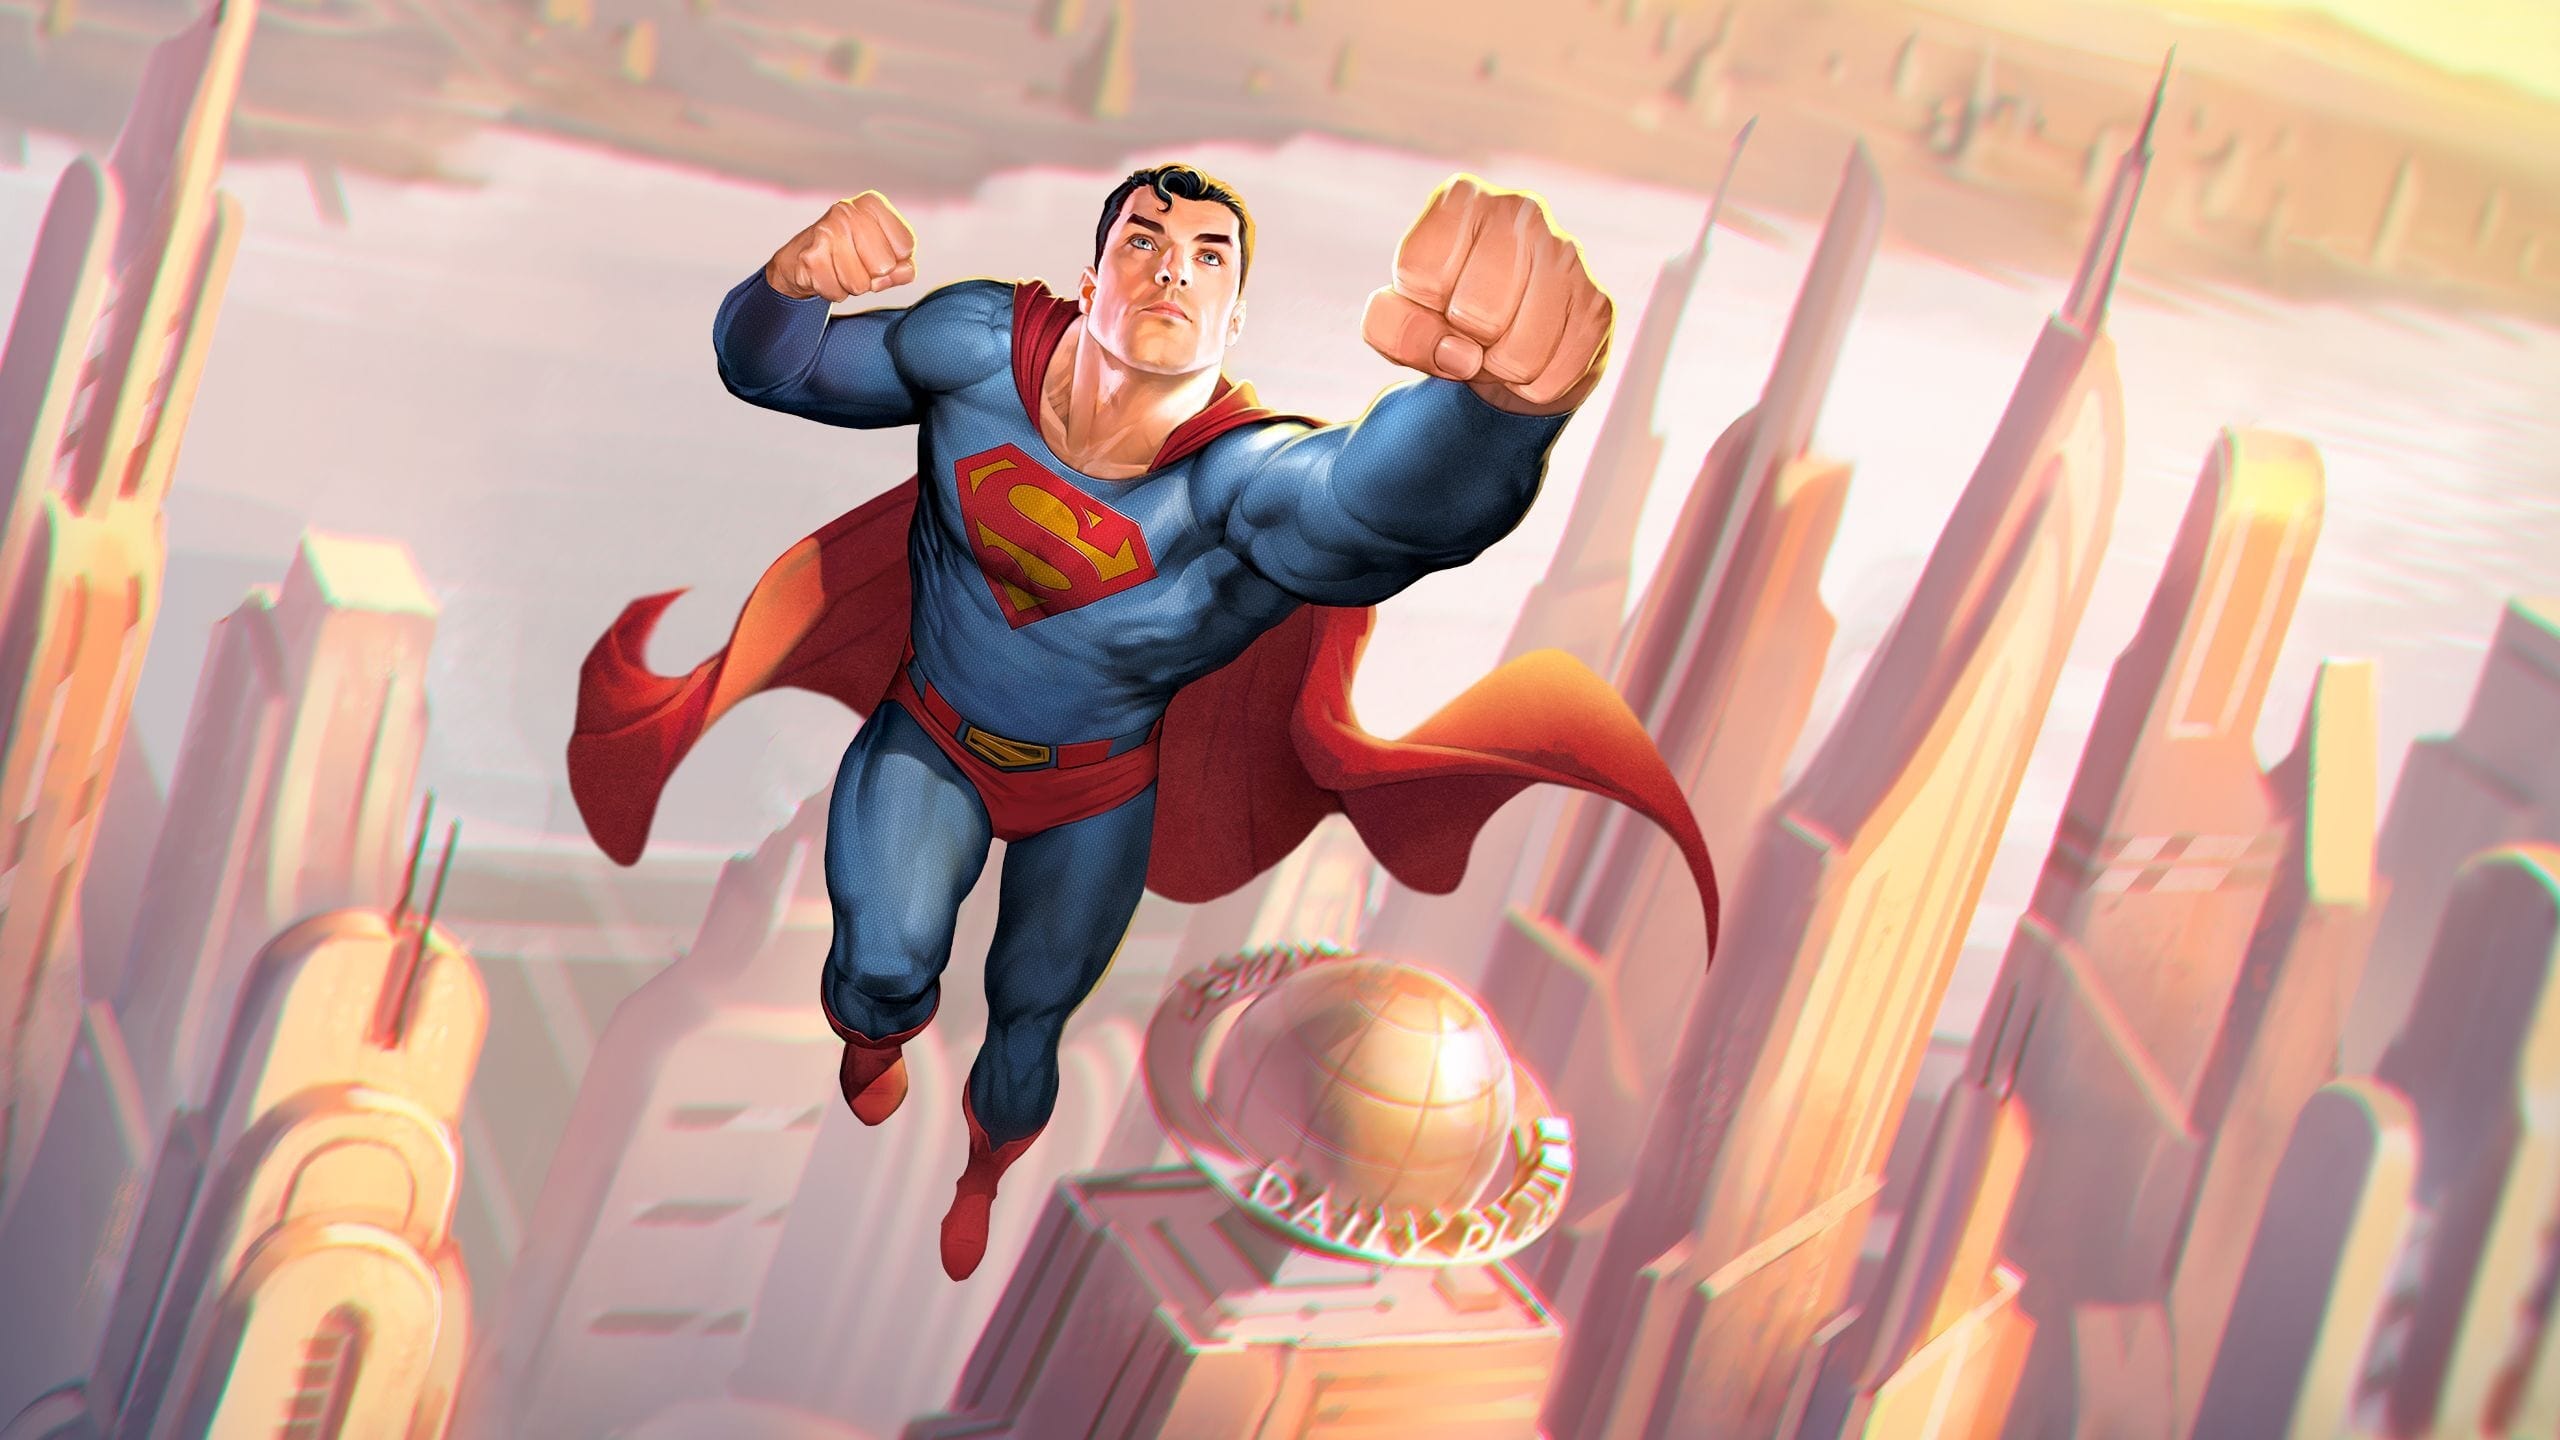 Скачать обои Супермен: Человек Завтрашнего Дня на телефон бесплатно